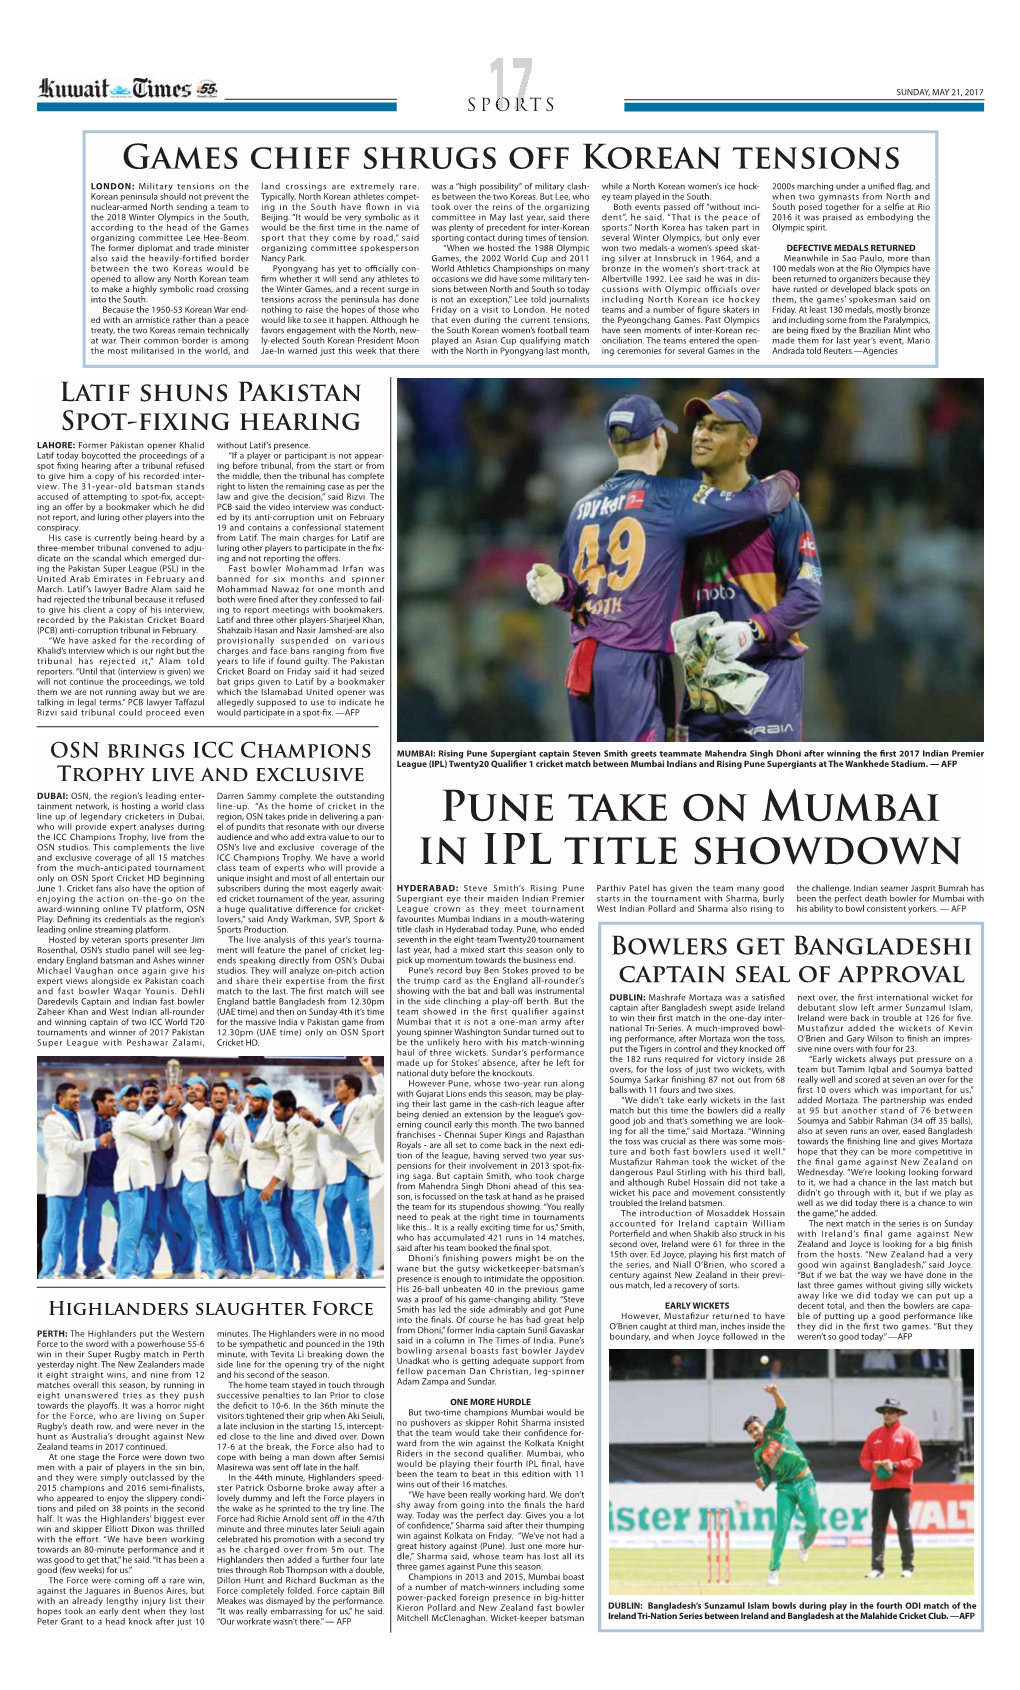 PUNE Take on Mumbai in IPL Title Showdown